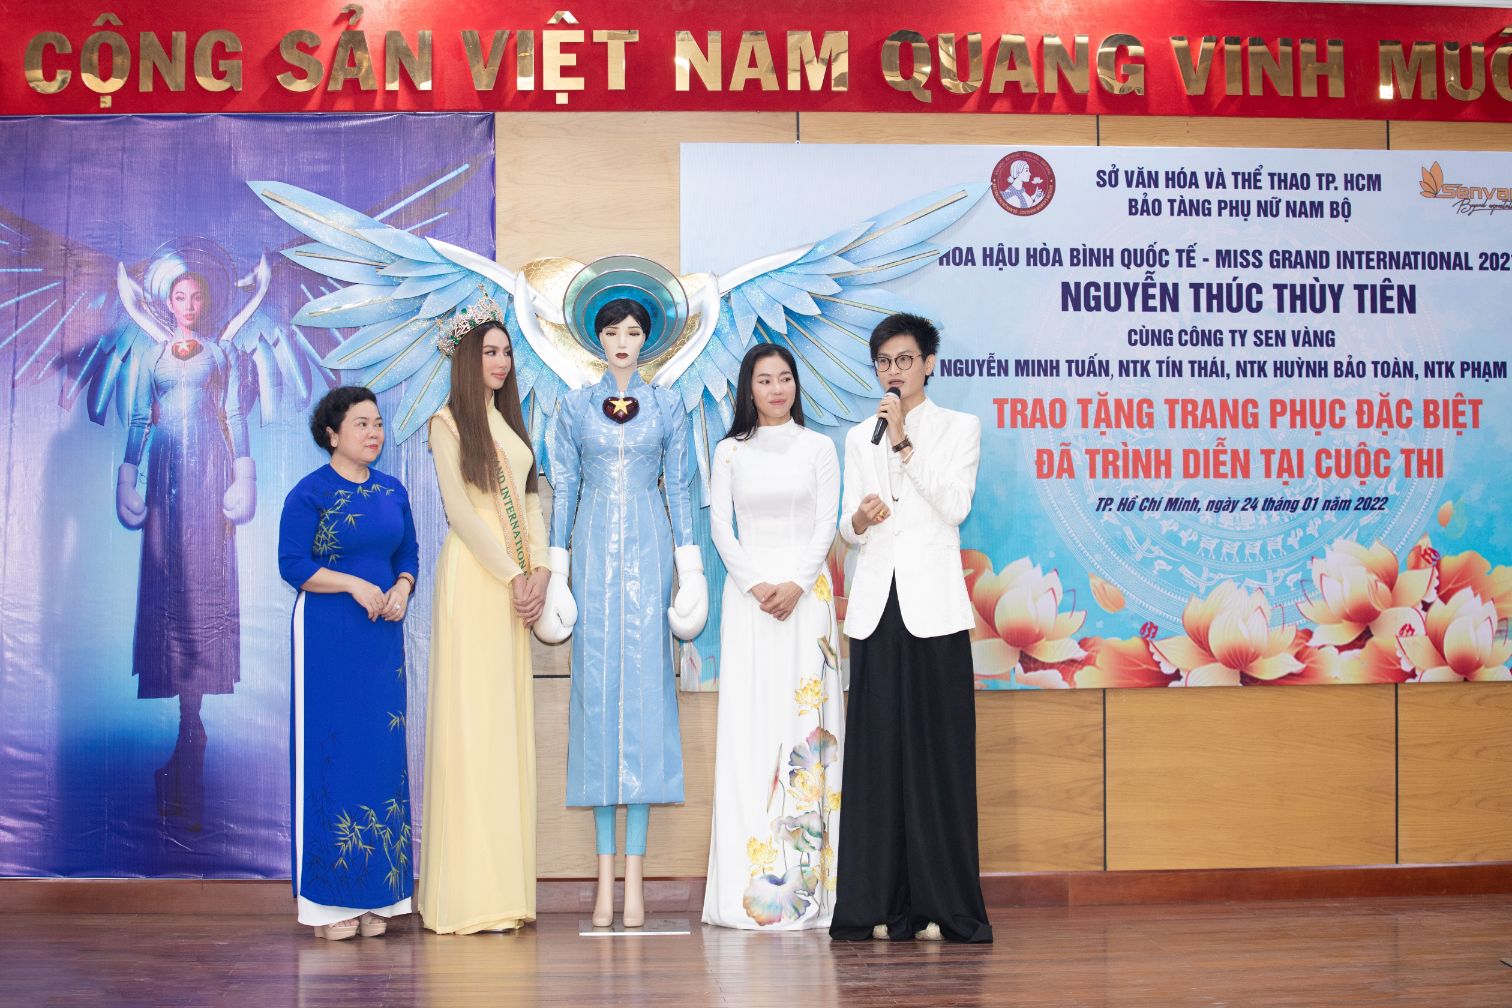 NTK TIN THAI 4 Hoa hậu Thùy Tiên trao tặng trang phục dự thi quốc tế cho Bảo tàng Phụ nữ Nam Bộ